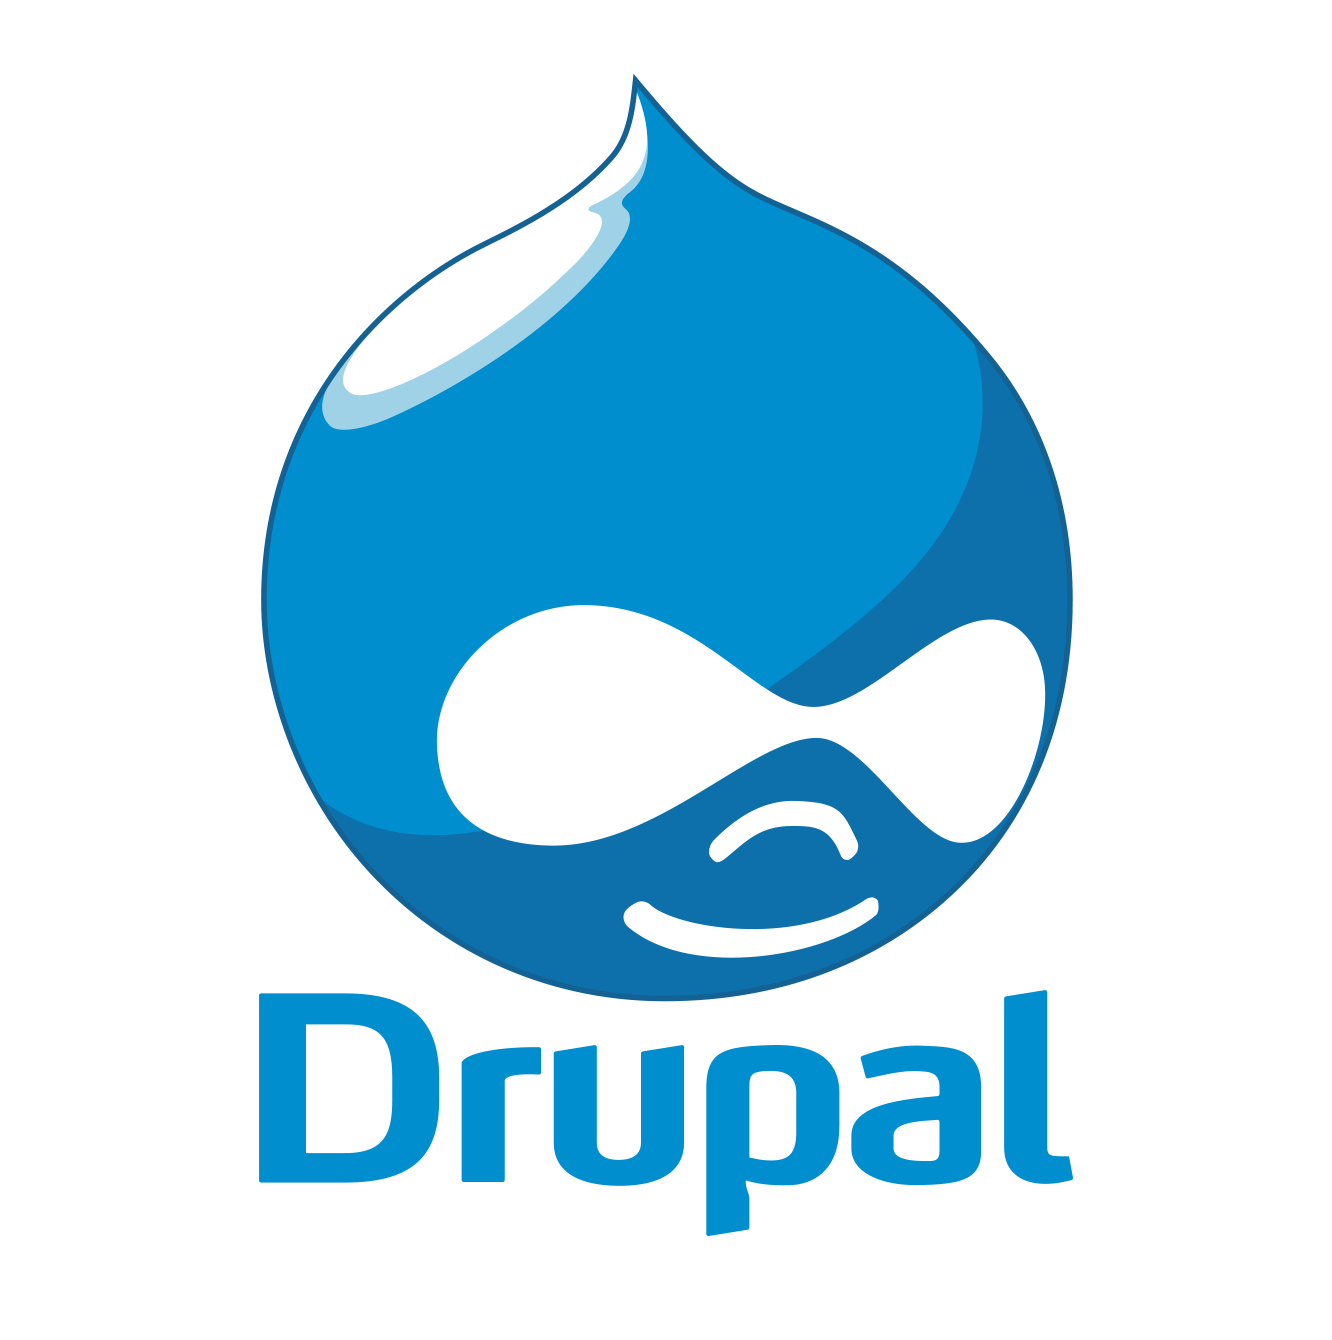 Drupal website design 